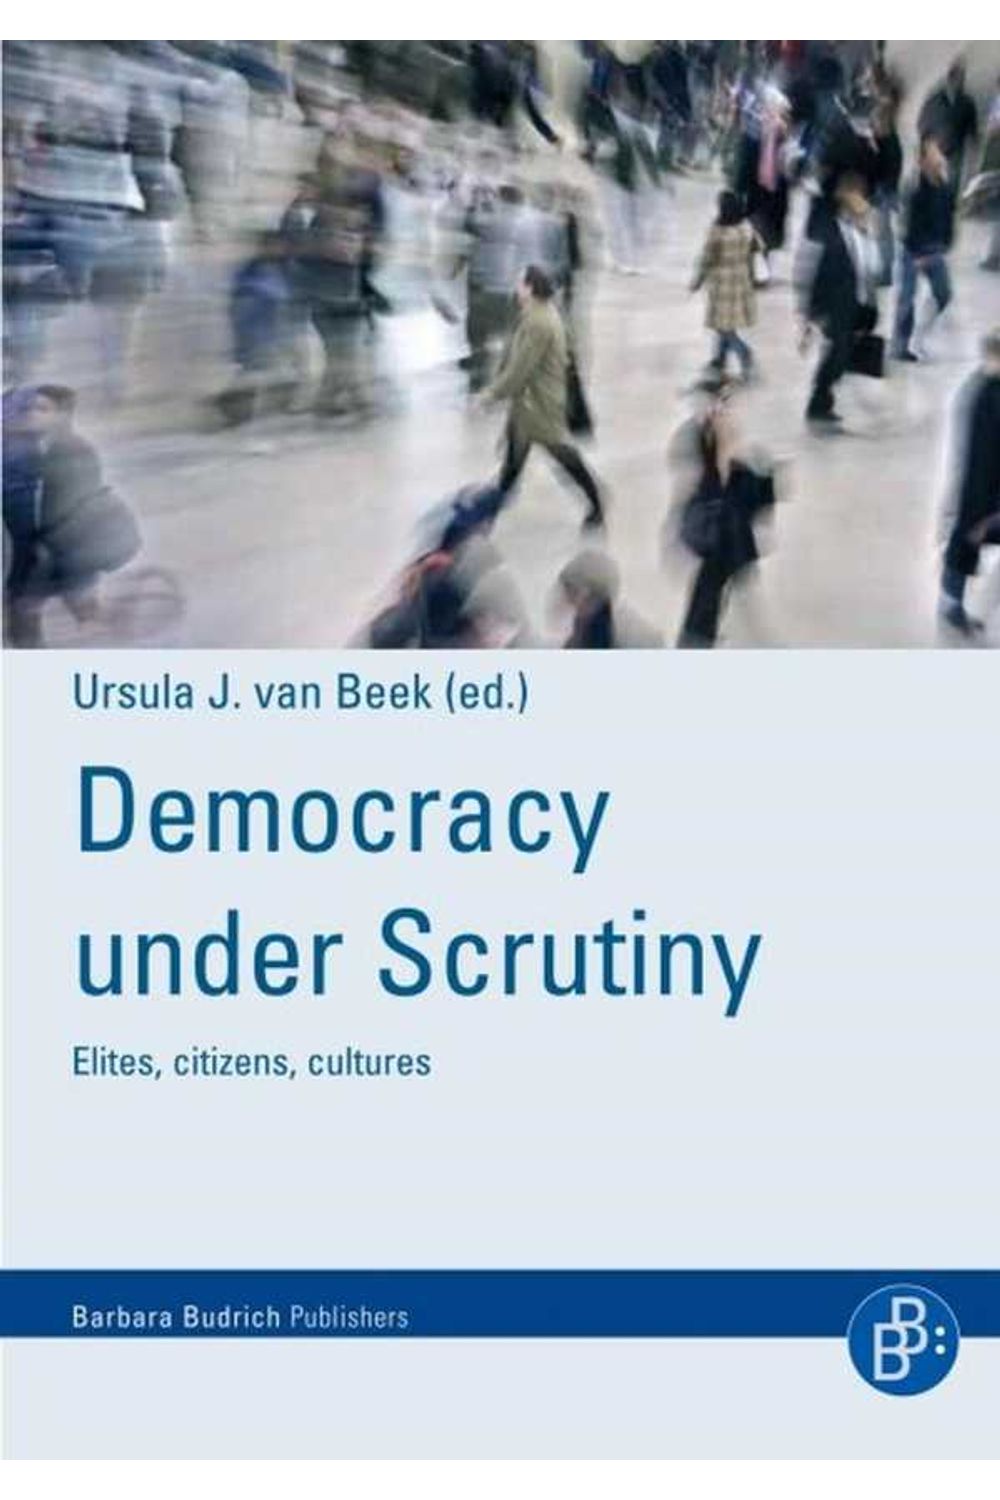 bw-democracy-under-scrutiny-verlag-barbara-budrich-9783866497023